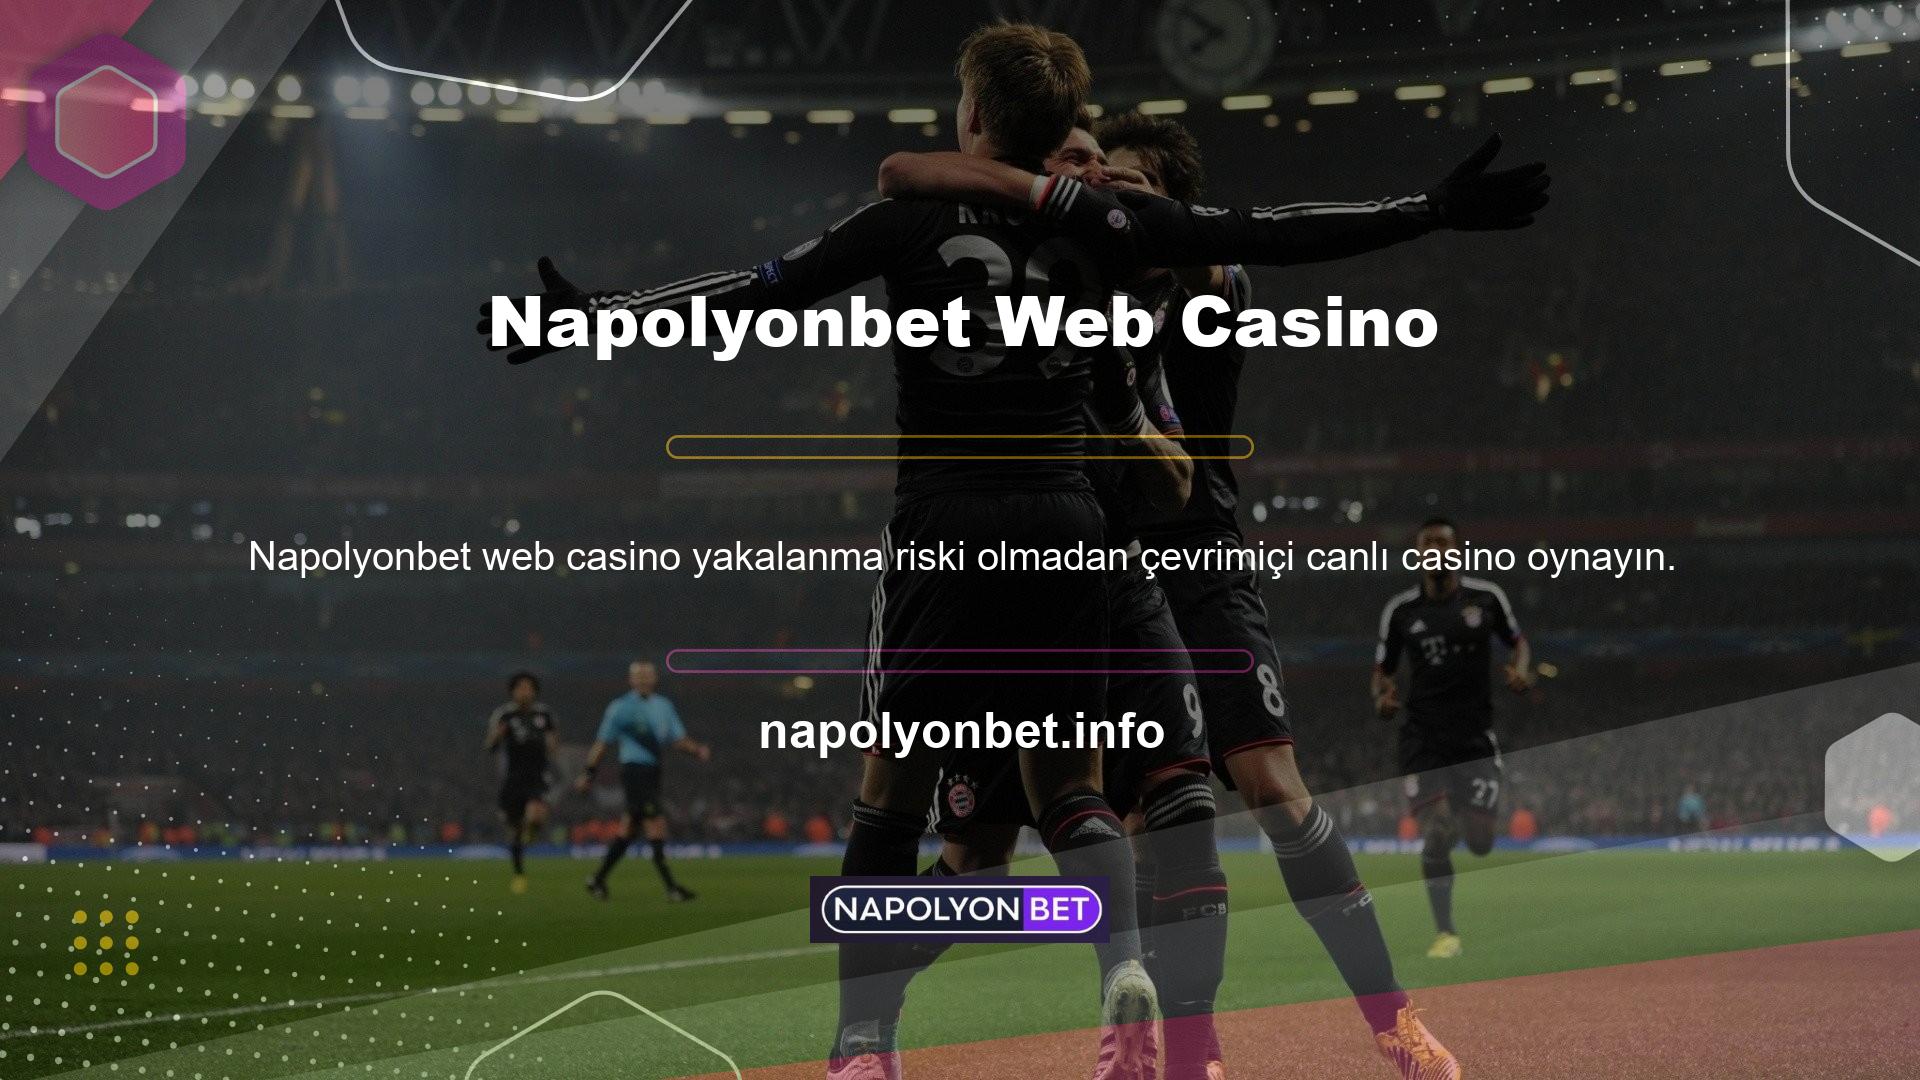 Canlı bahis ve casino oyun sitesi Napolyonbet müşterilerine bu güveni sunmaktadır